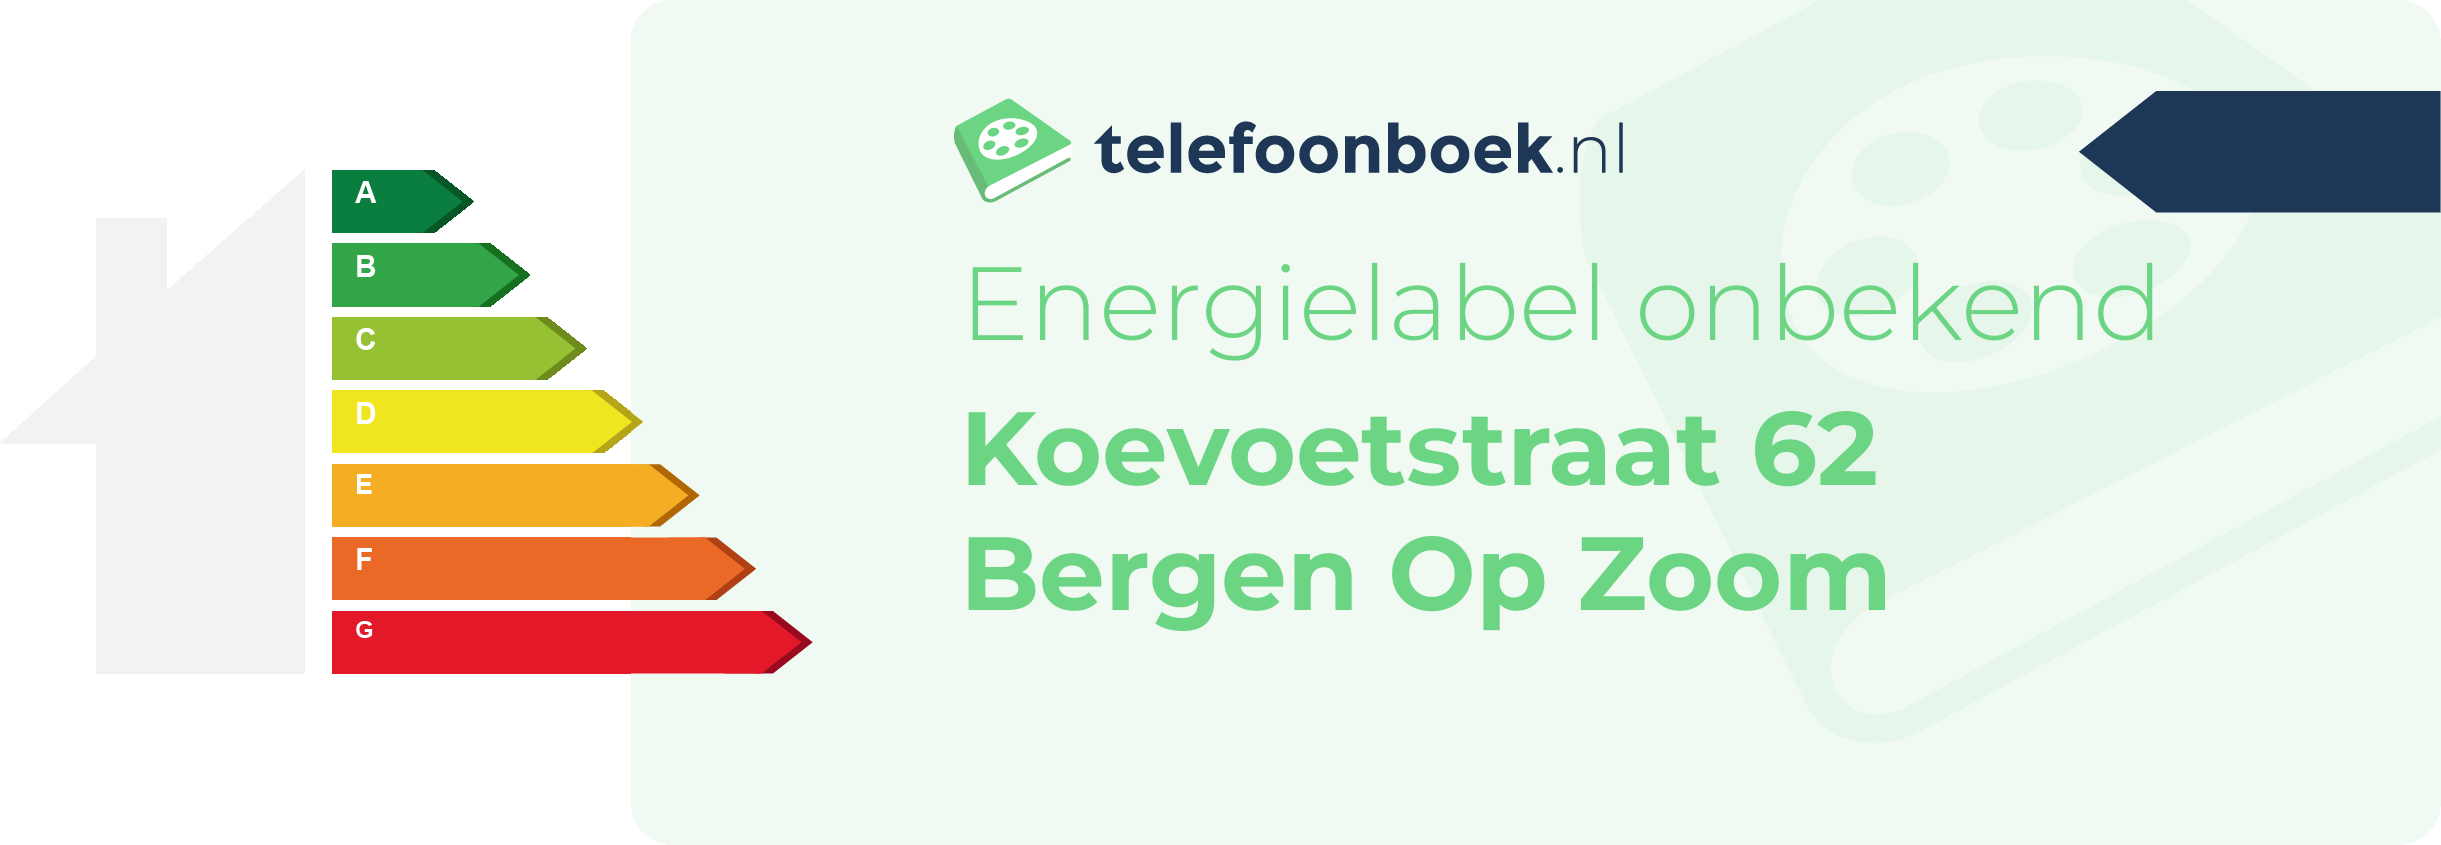 Energielabel Koevoetstraat 62 Bergen Op Zoom